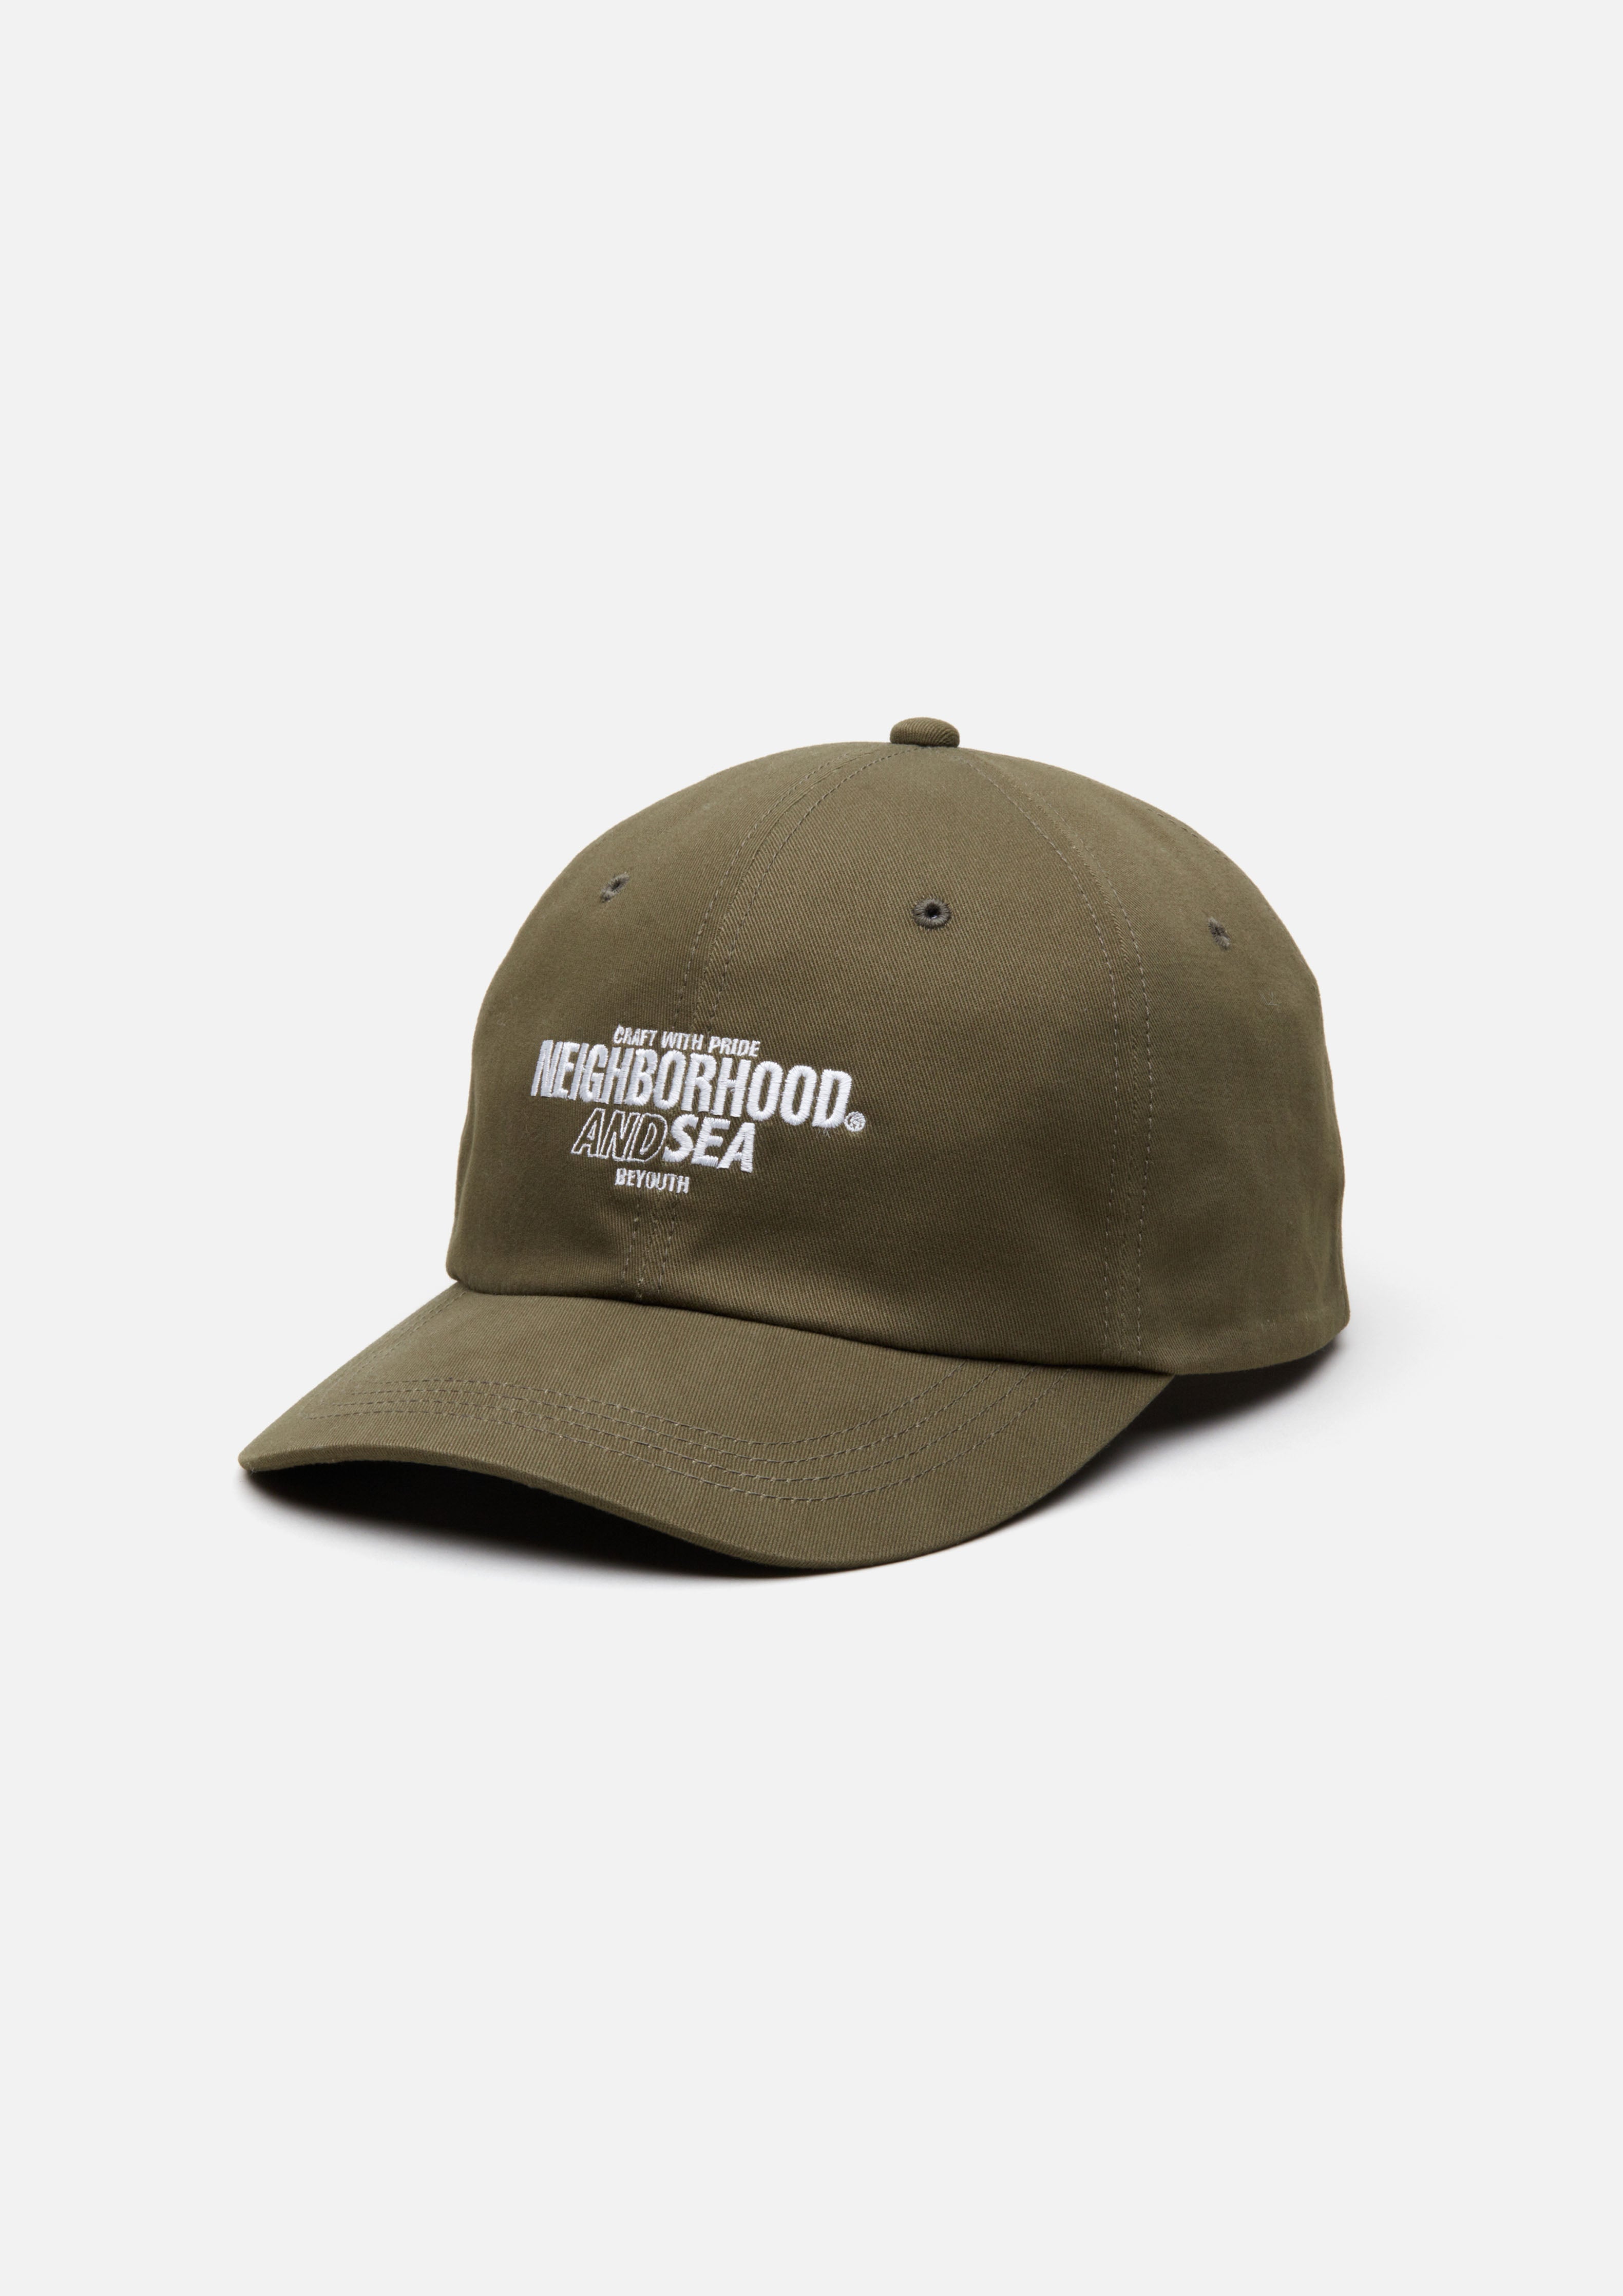 ネイバーフッド DAD CAP BEIGE NEIGHBORHOOD キャップ | www